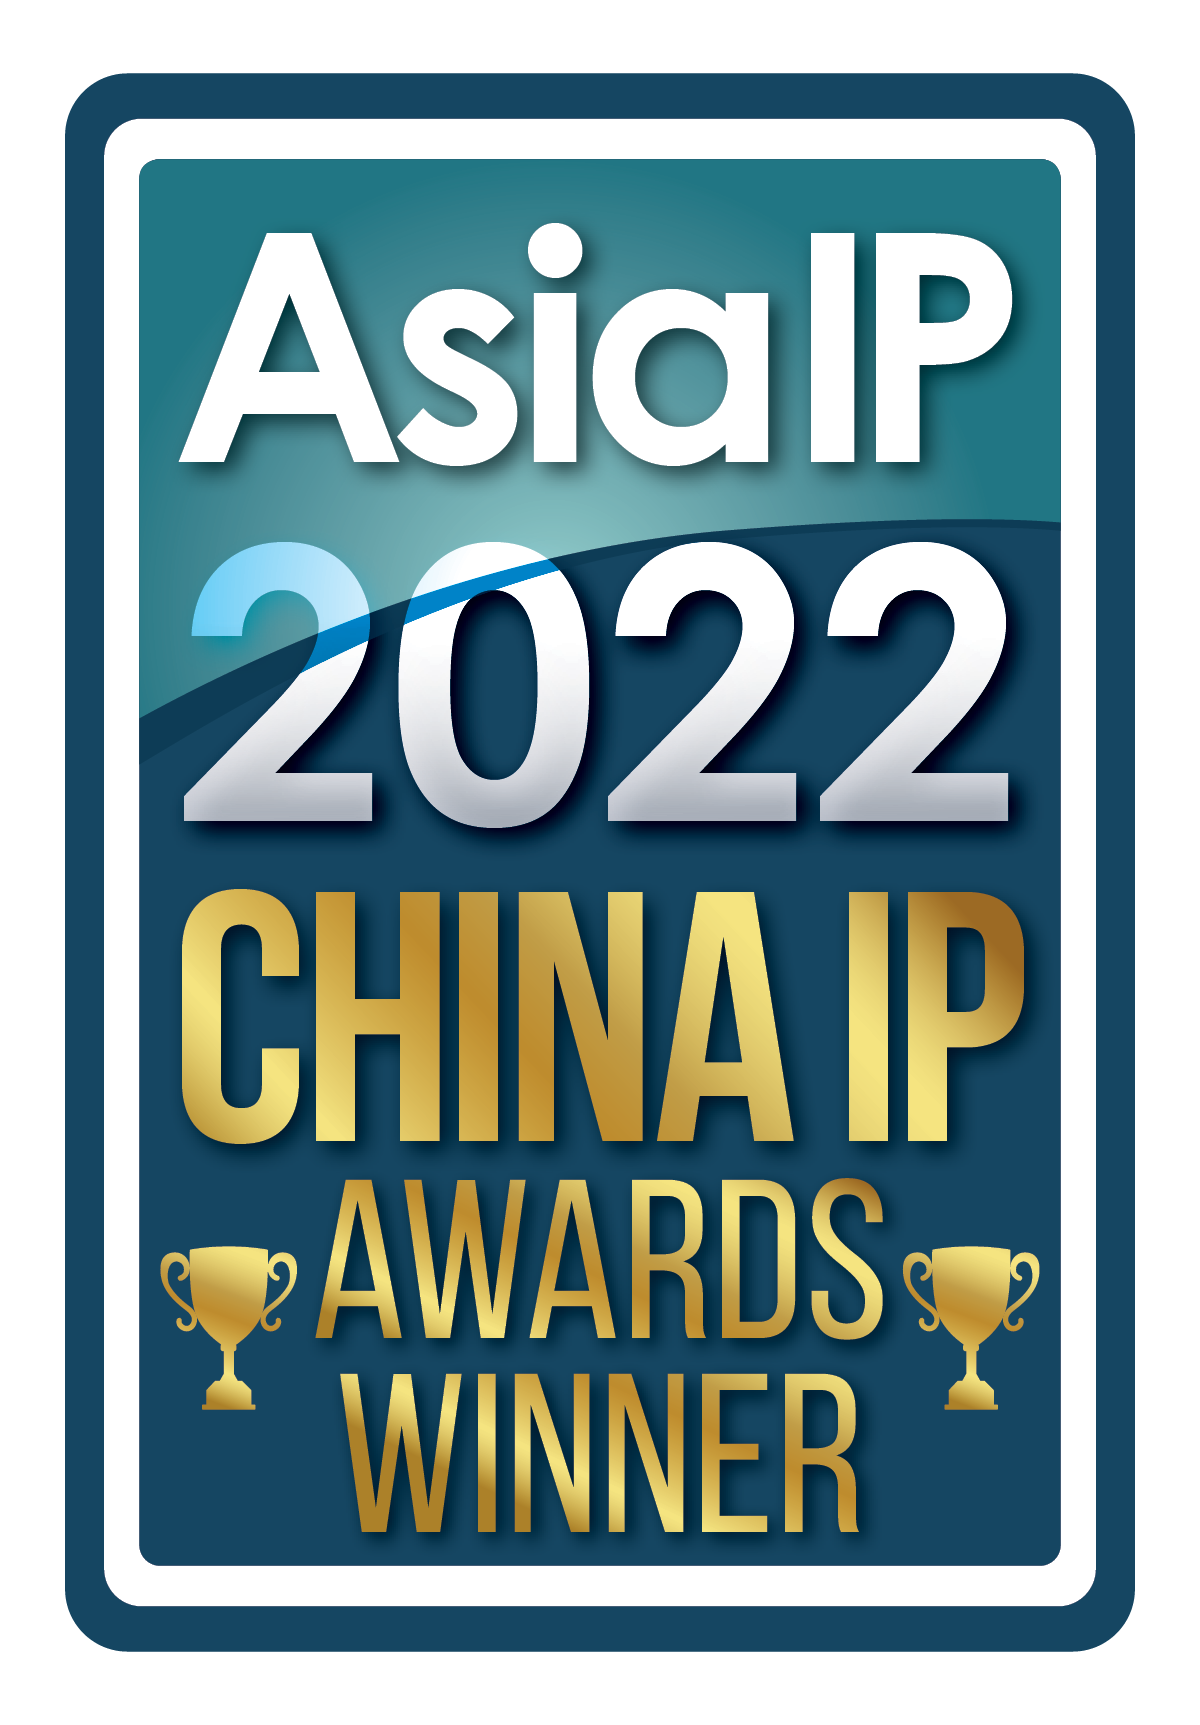 Asia IP 2022 China IP Awards Winner logo.png